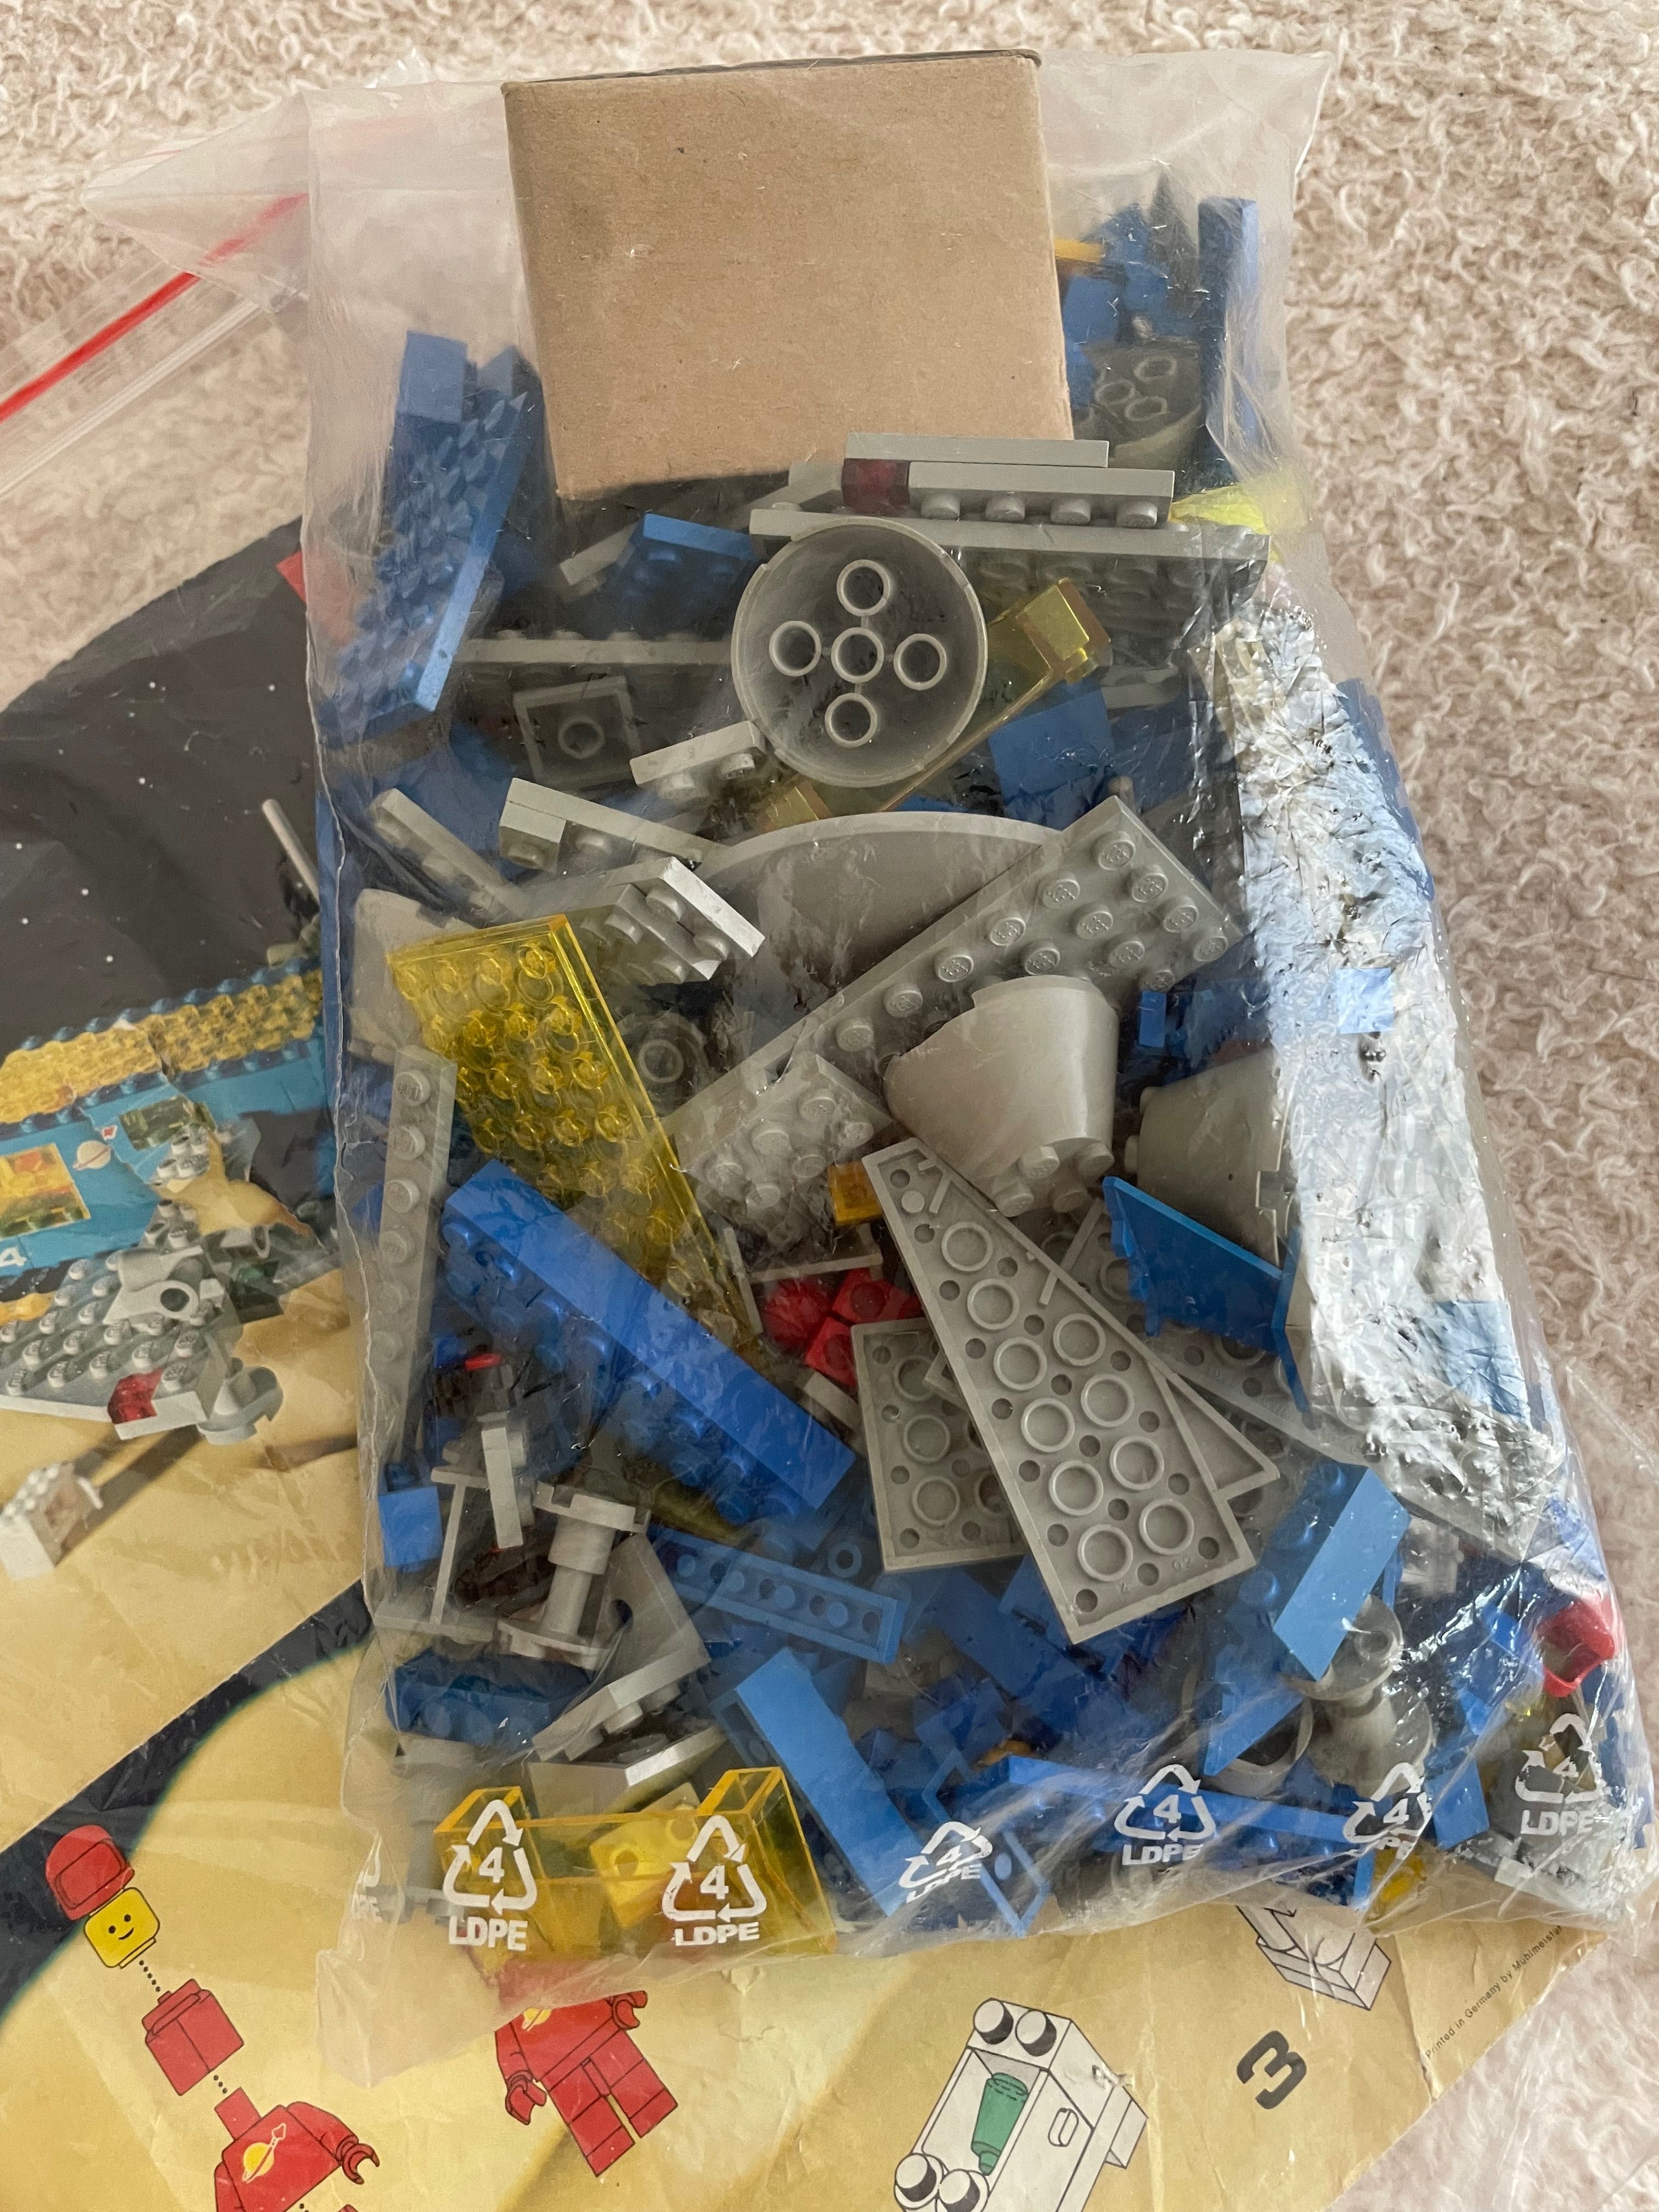 Lego 924 Galaxy Lego space